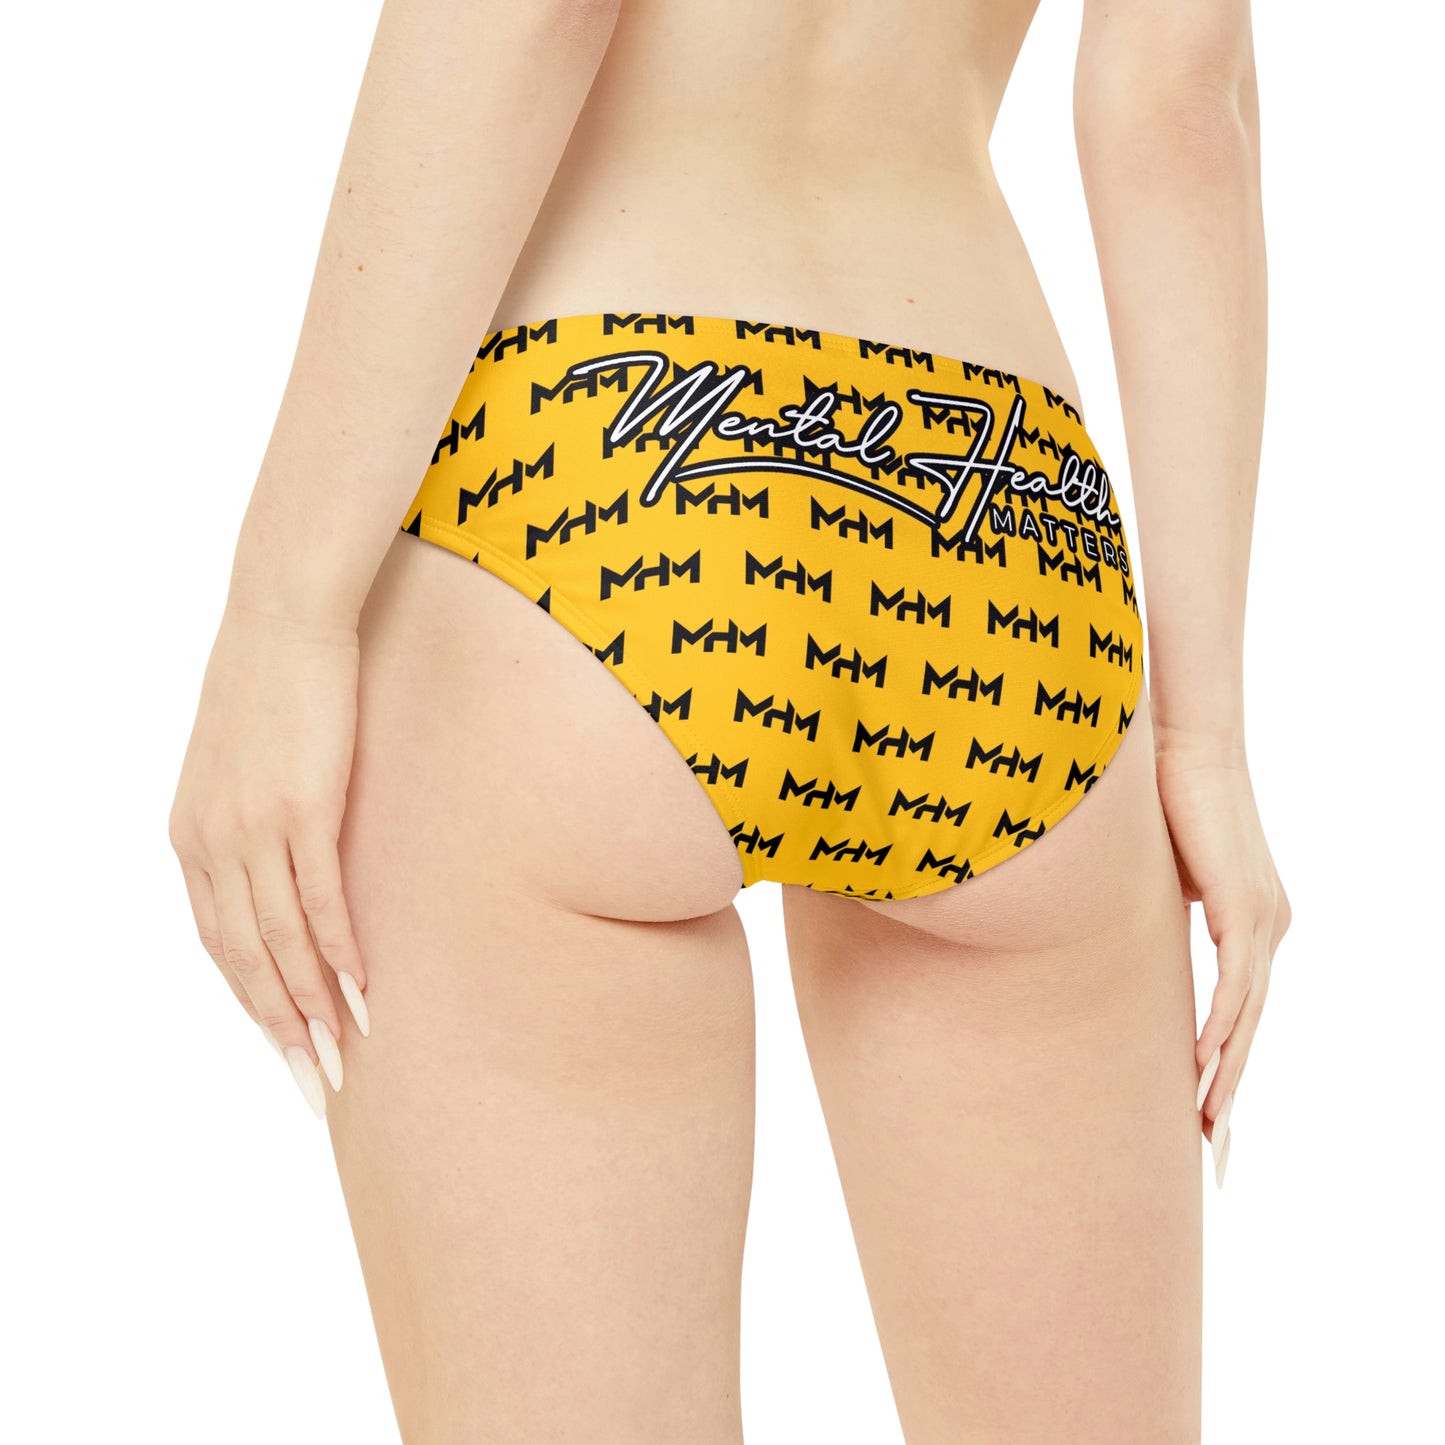 MHM Bikini Set (Yellow)